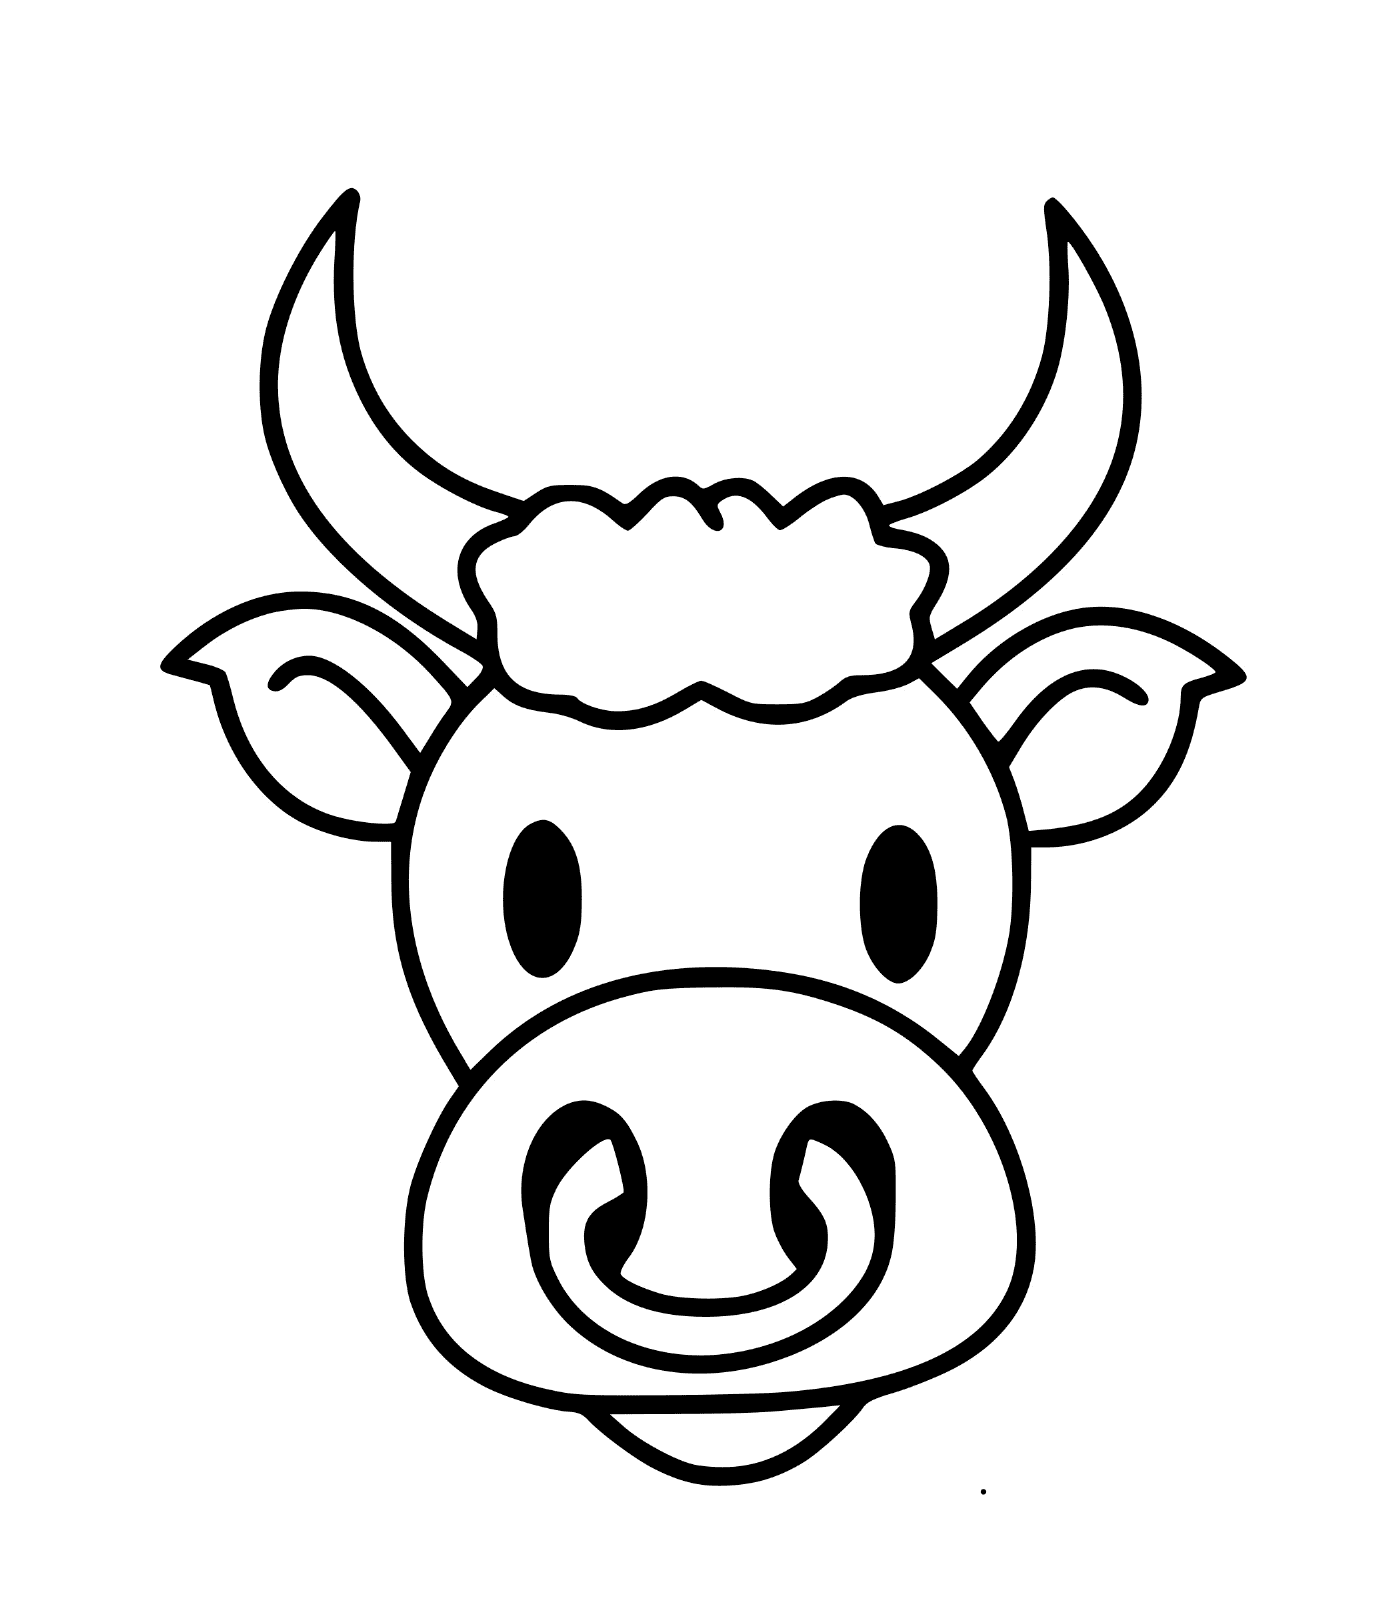  Smileing bull's head 